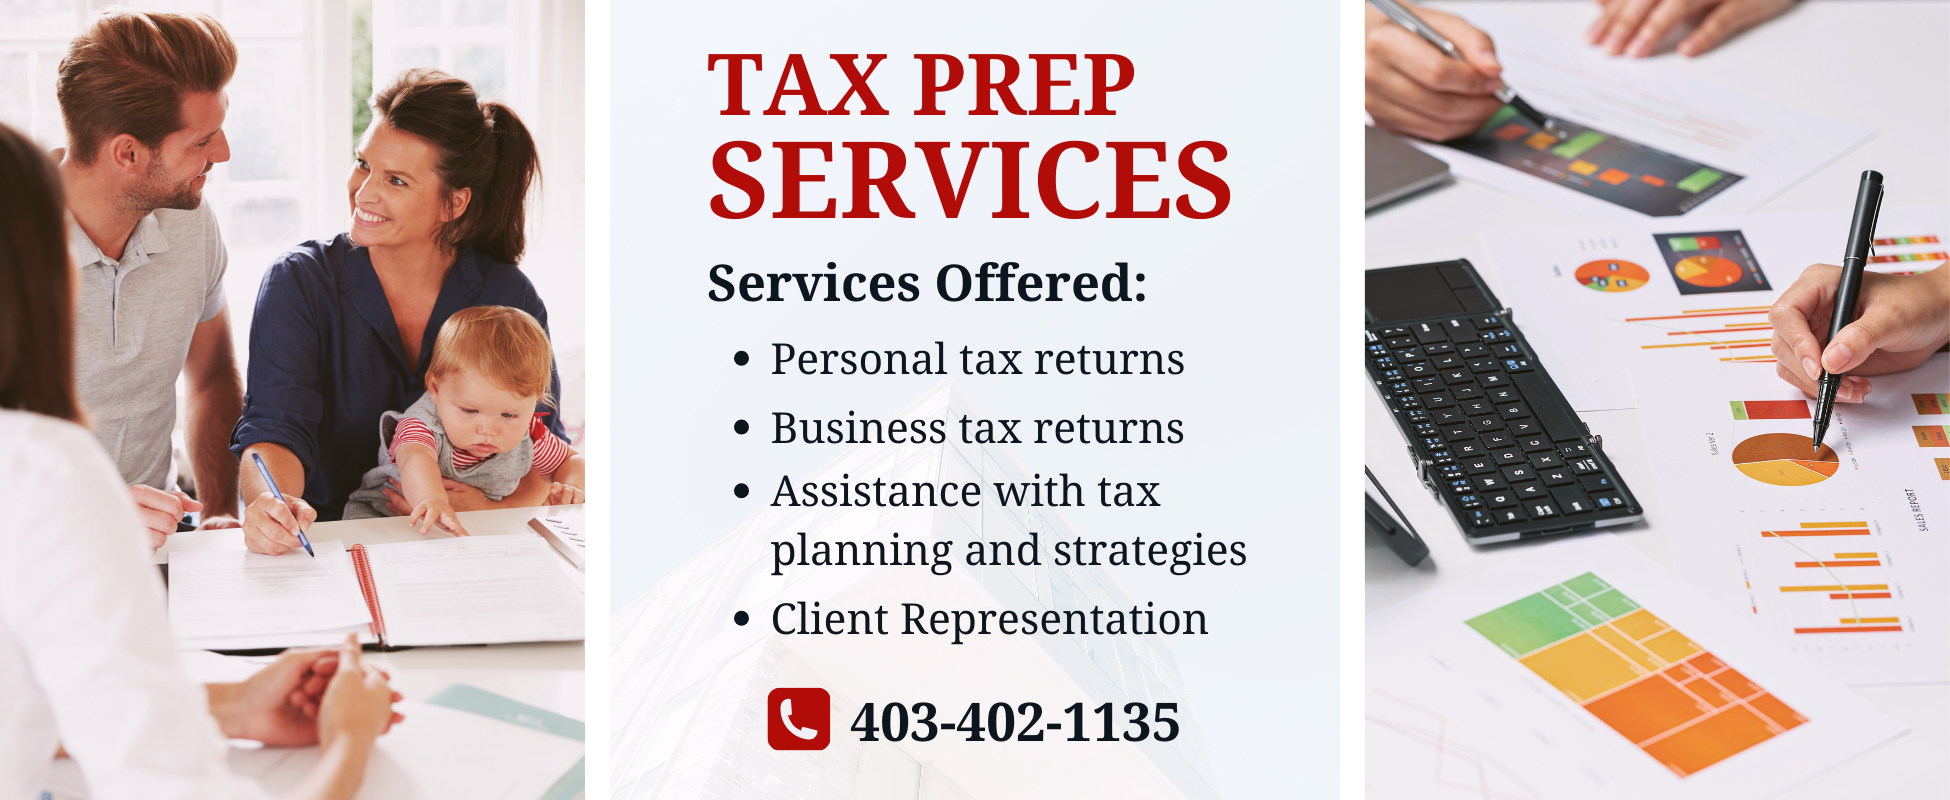 Tax Services Personal Tax Returns Business Tax Returns